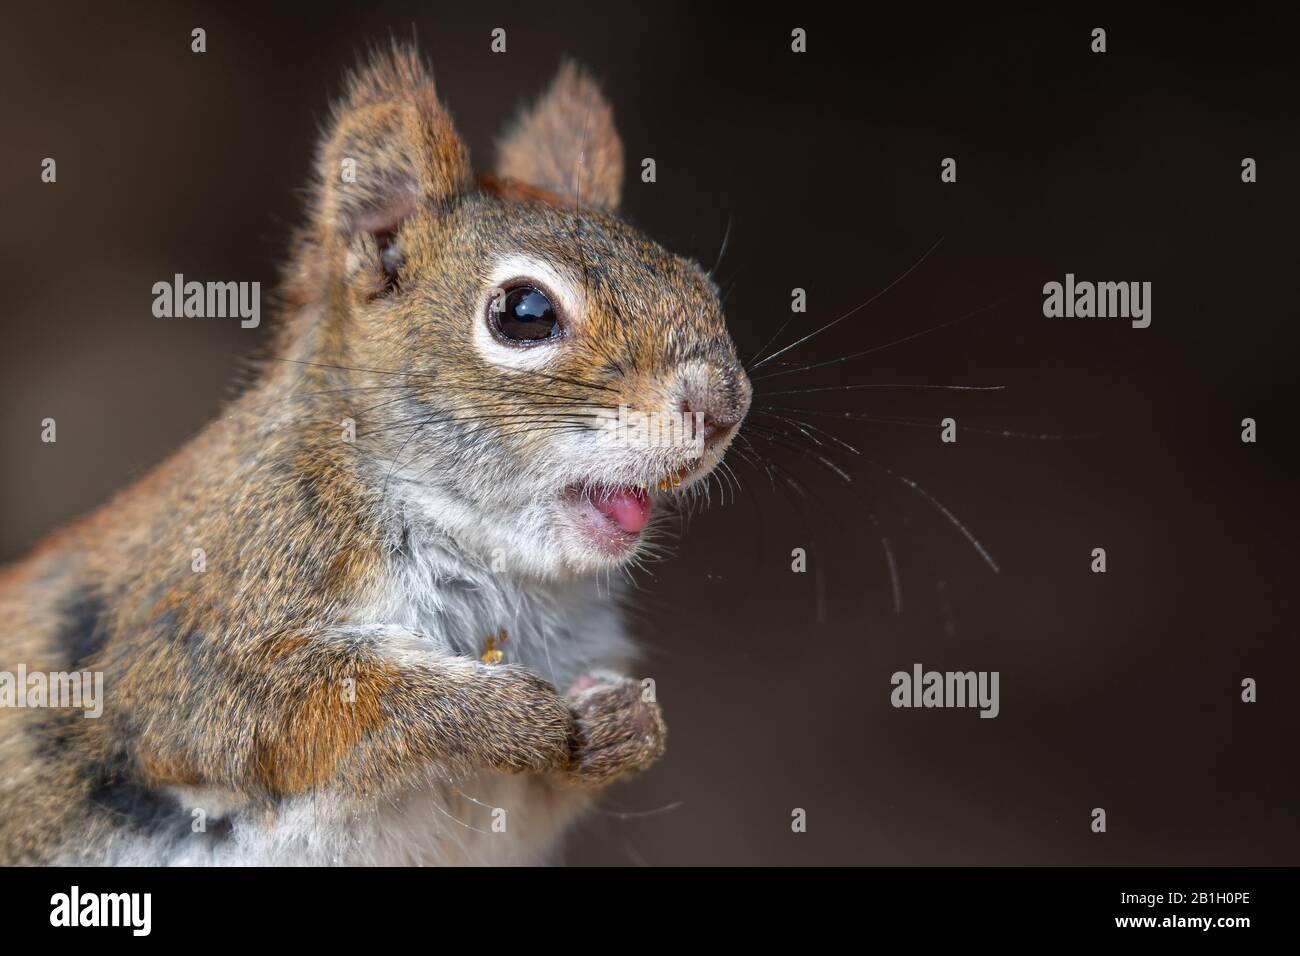 Un closeup du visage os un petit écureuil rouge. L'écureuil tient ses pattes ensemble et sourit. Banque D'Images